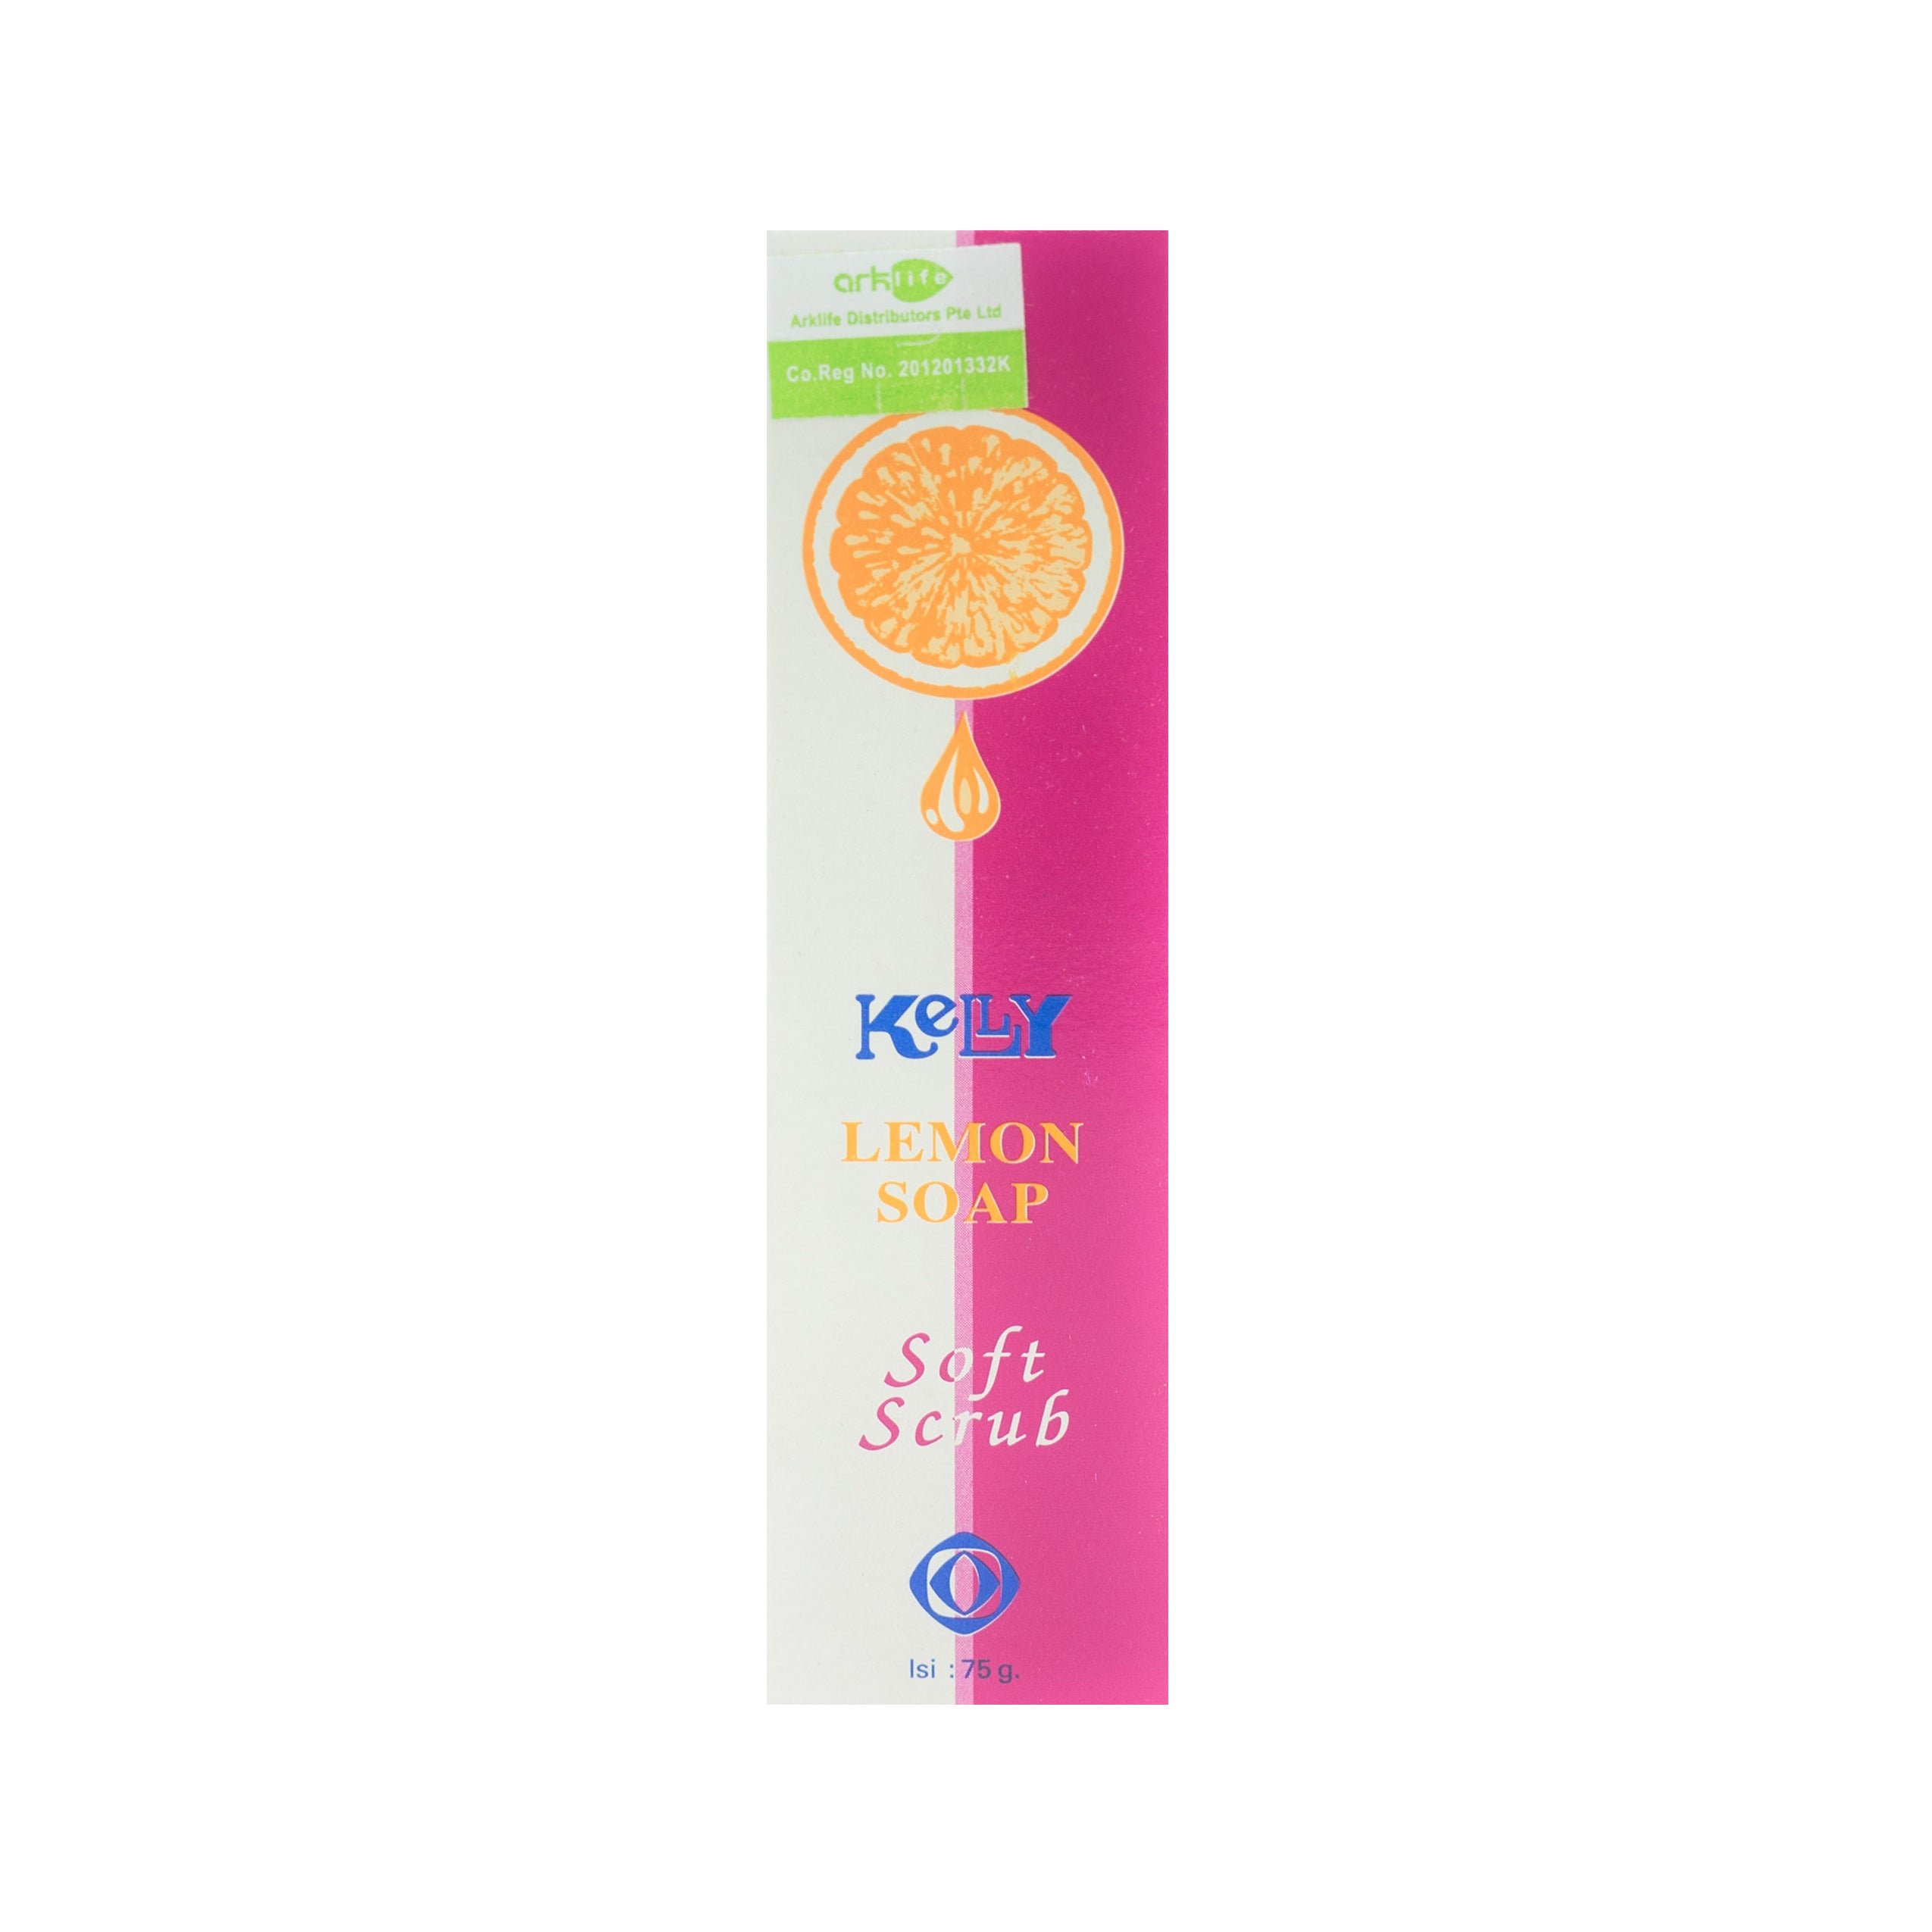 Kelly Lemon Soap, Soft Scrub, 75 g